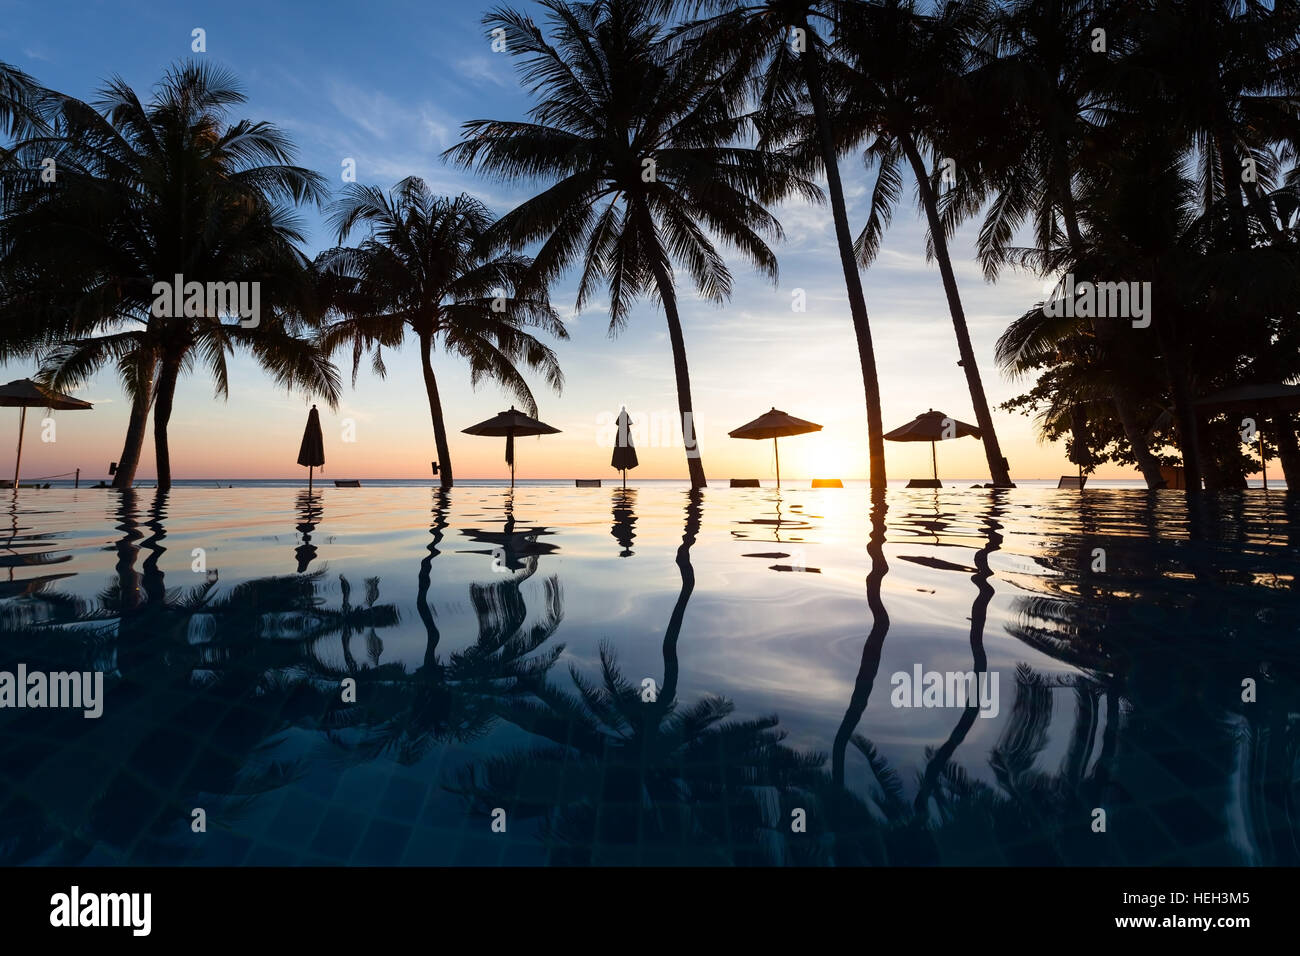 Mar de palmeras con el reflejo en el agua de la piscina en un complejo hotelero de playa, atardecer Foto de stock